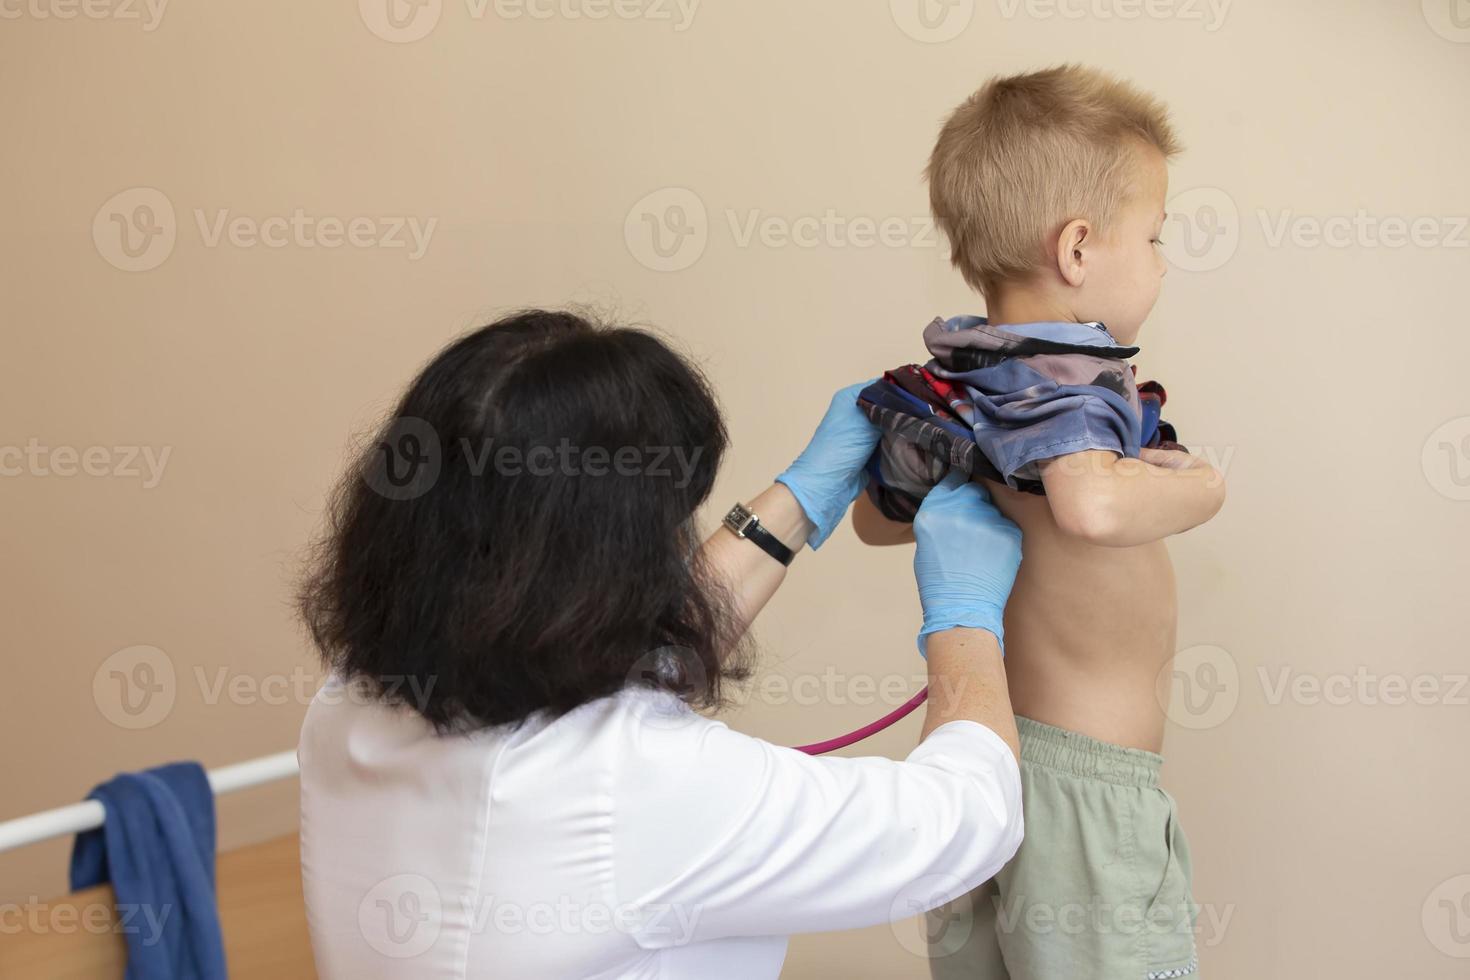 das Arzt Verwendet ein Stethoskop auf das Jungs zurück zu prüfen seine Gesundheit. foto